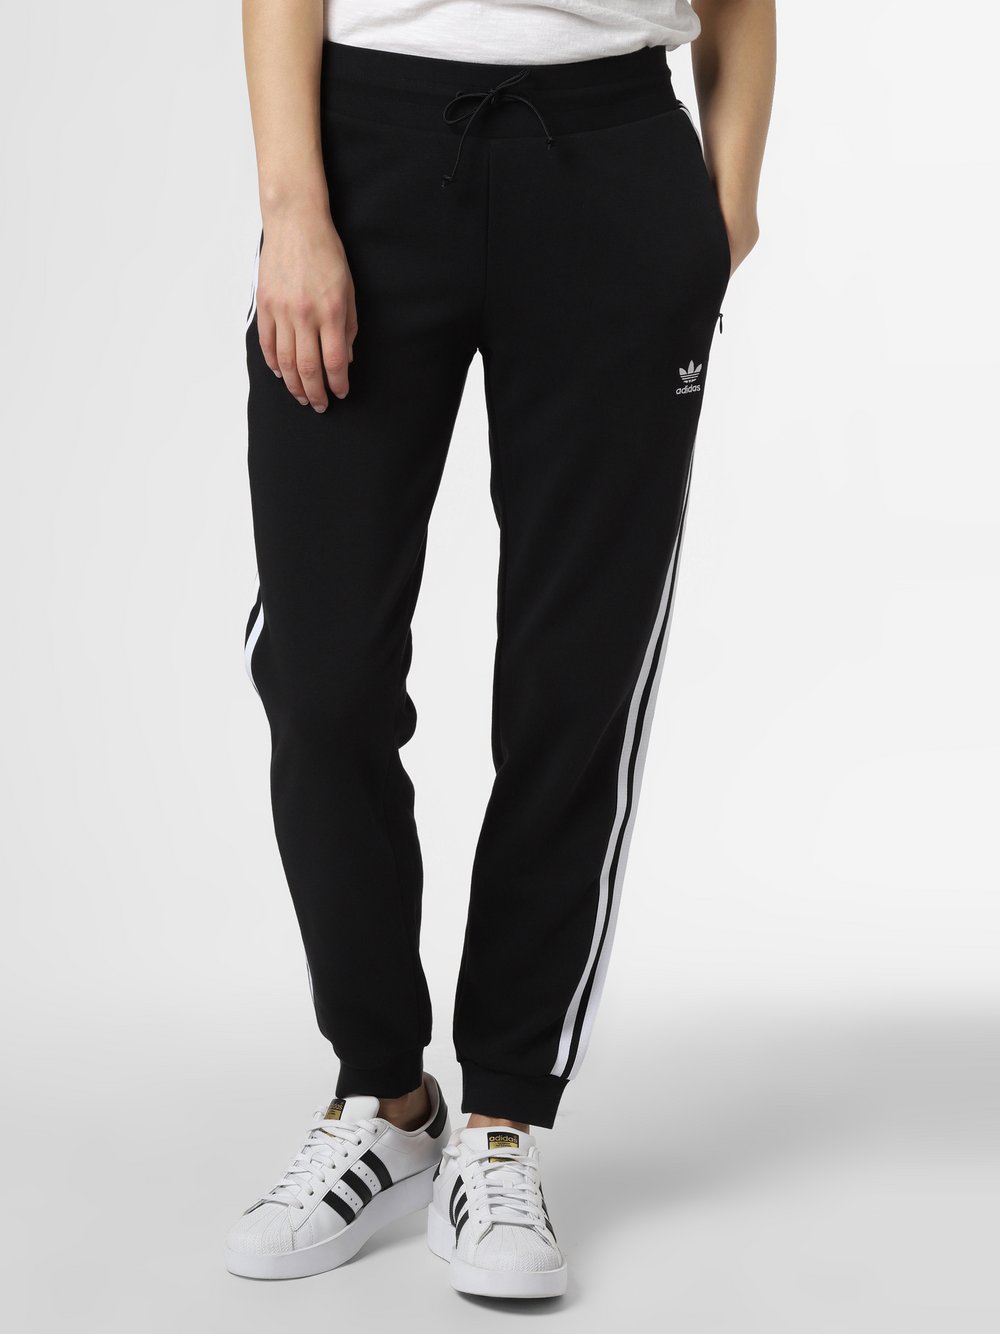 Adidas Originals - Spodnie dresowe, czarny